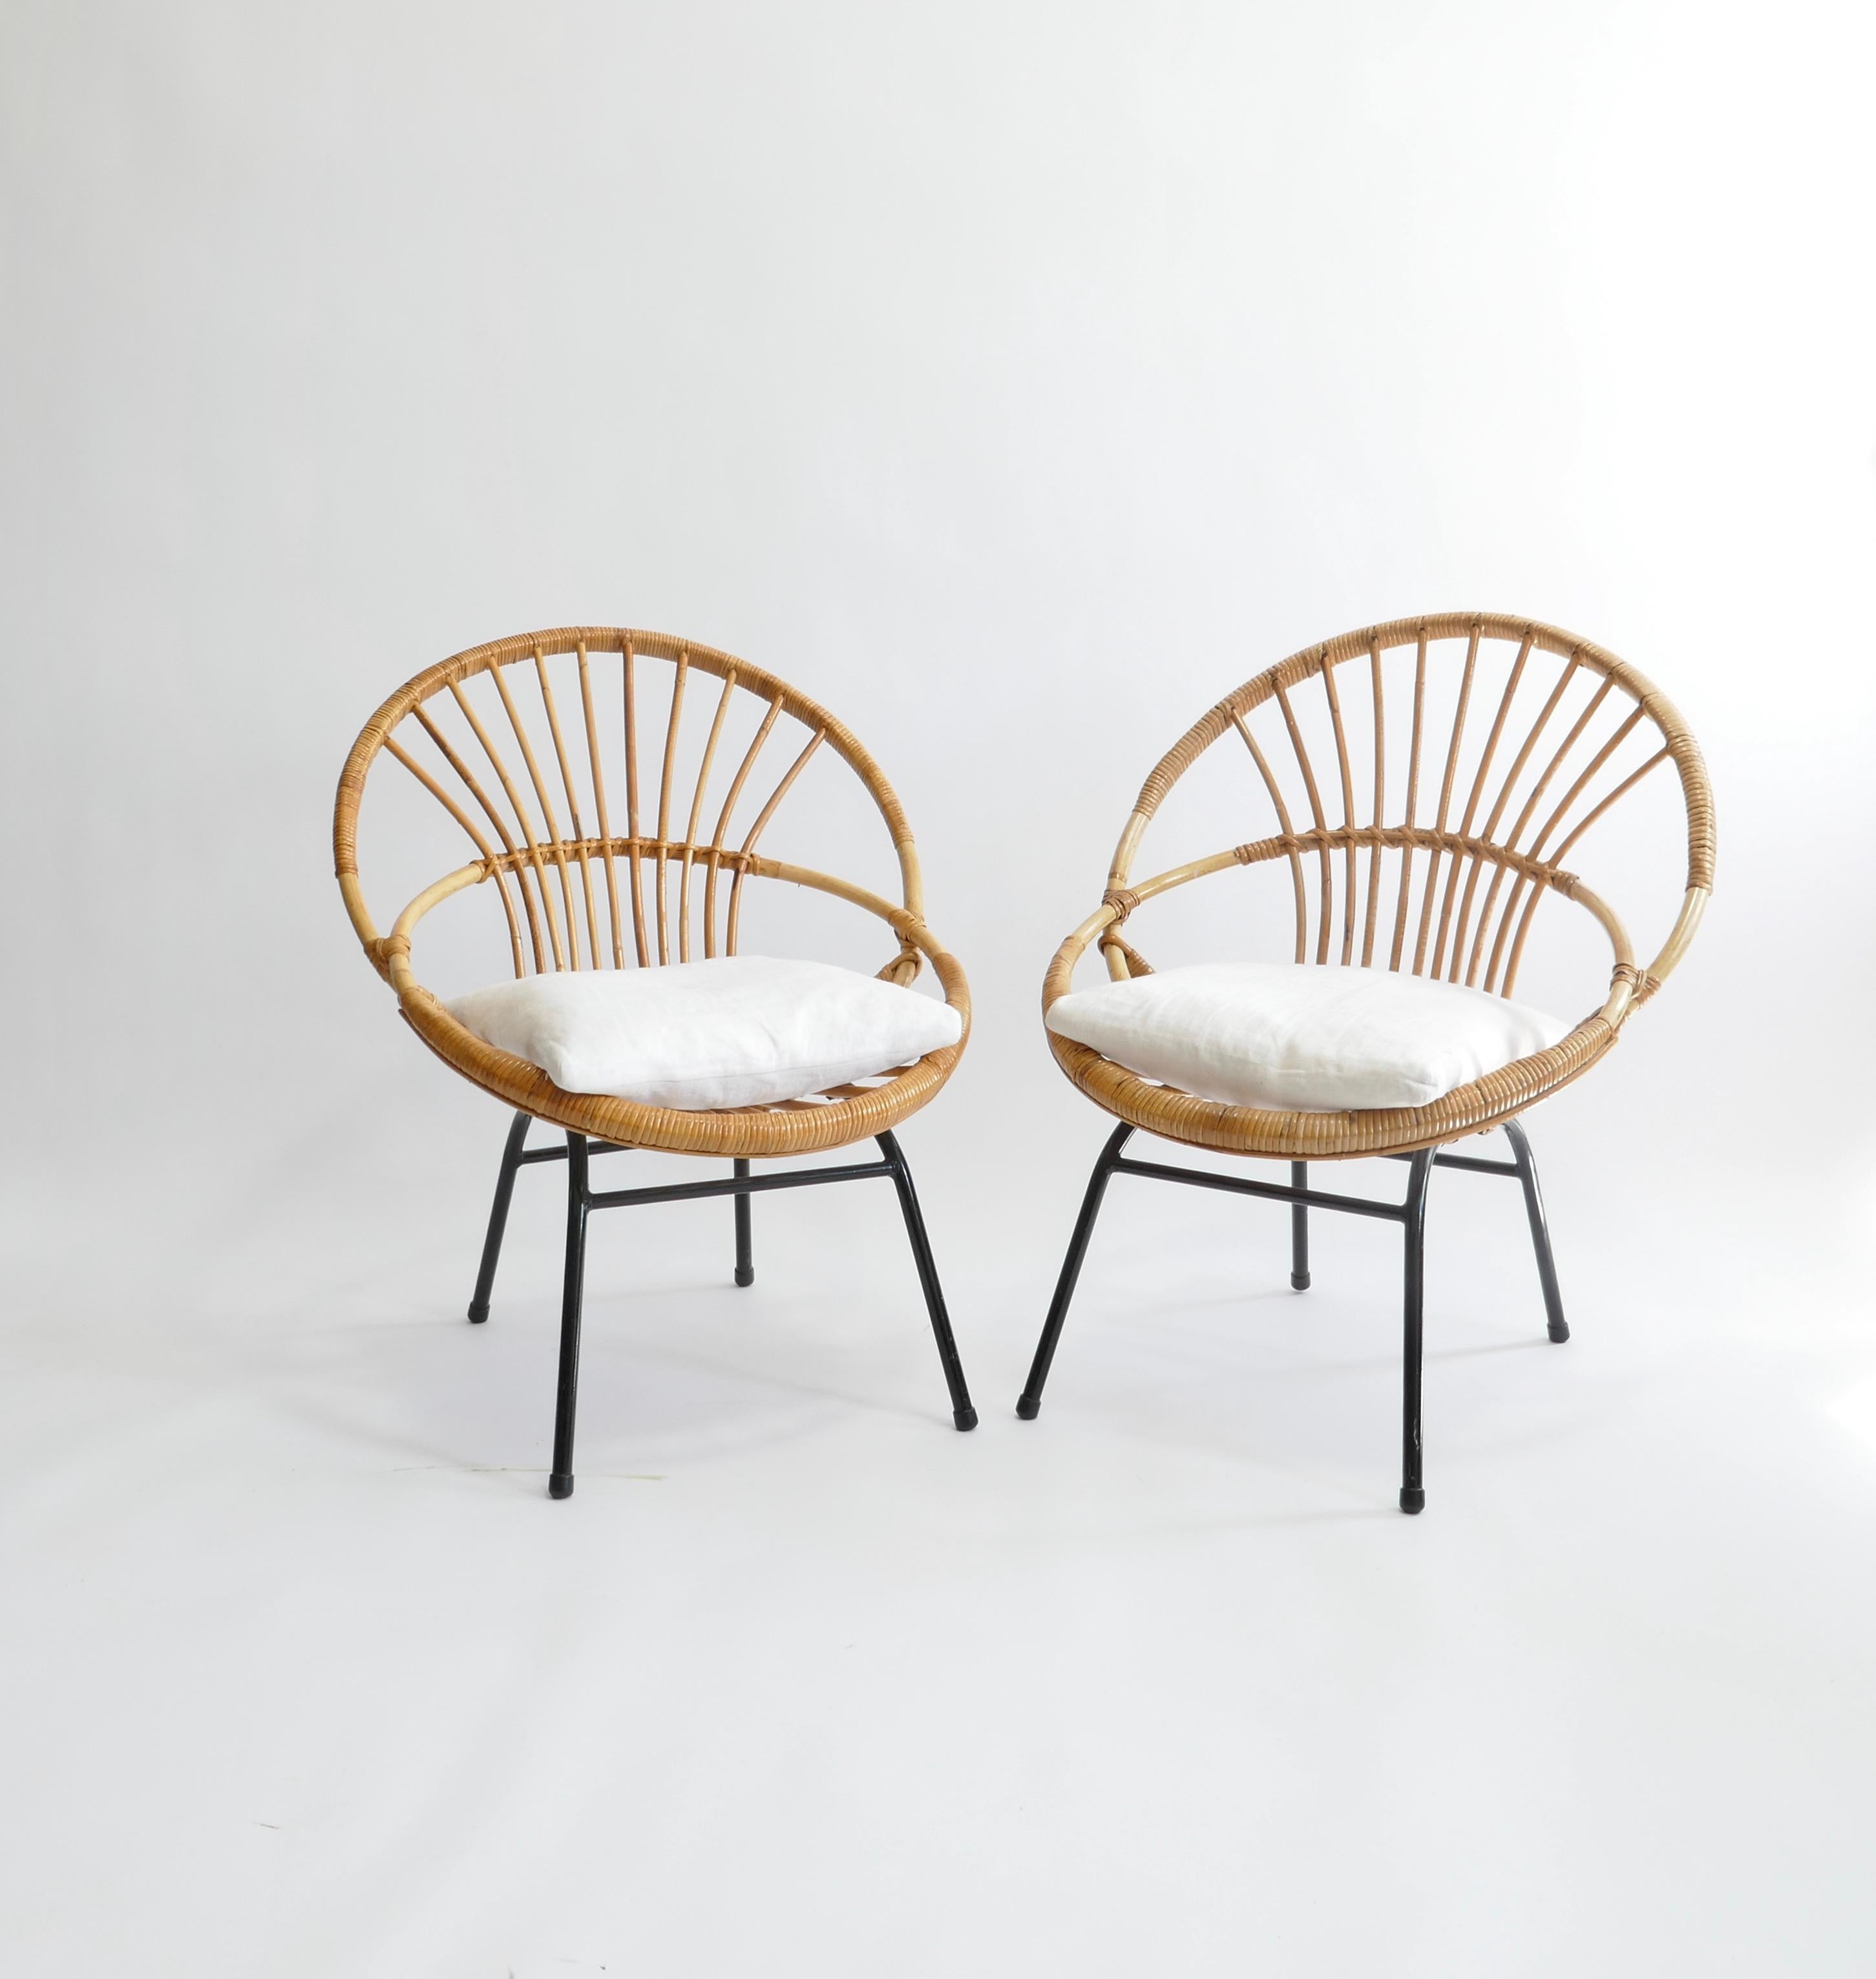 Sehr schöne skulpturale Rattan-Sessel aus Frankreich, 1950er Jahre. 
Die Stühle haben einen soliden Stahlrahmen, schwarz lackiert und eine handgeflochtene Rattansitzfläche. 
Sie lassen sich leicht platzieren und sind sehr bequem, besonders mit